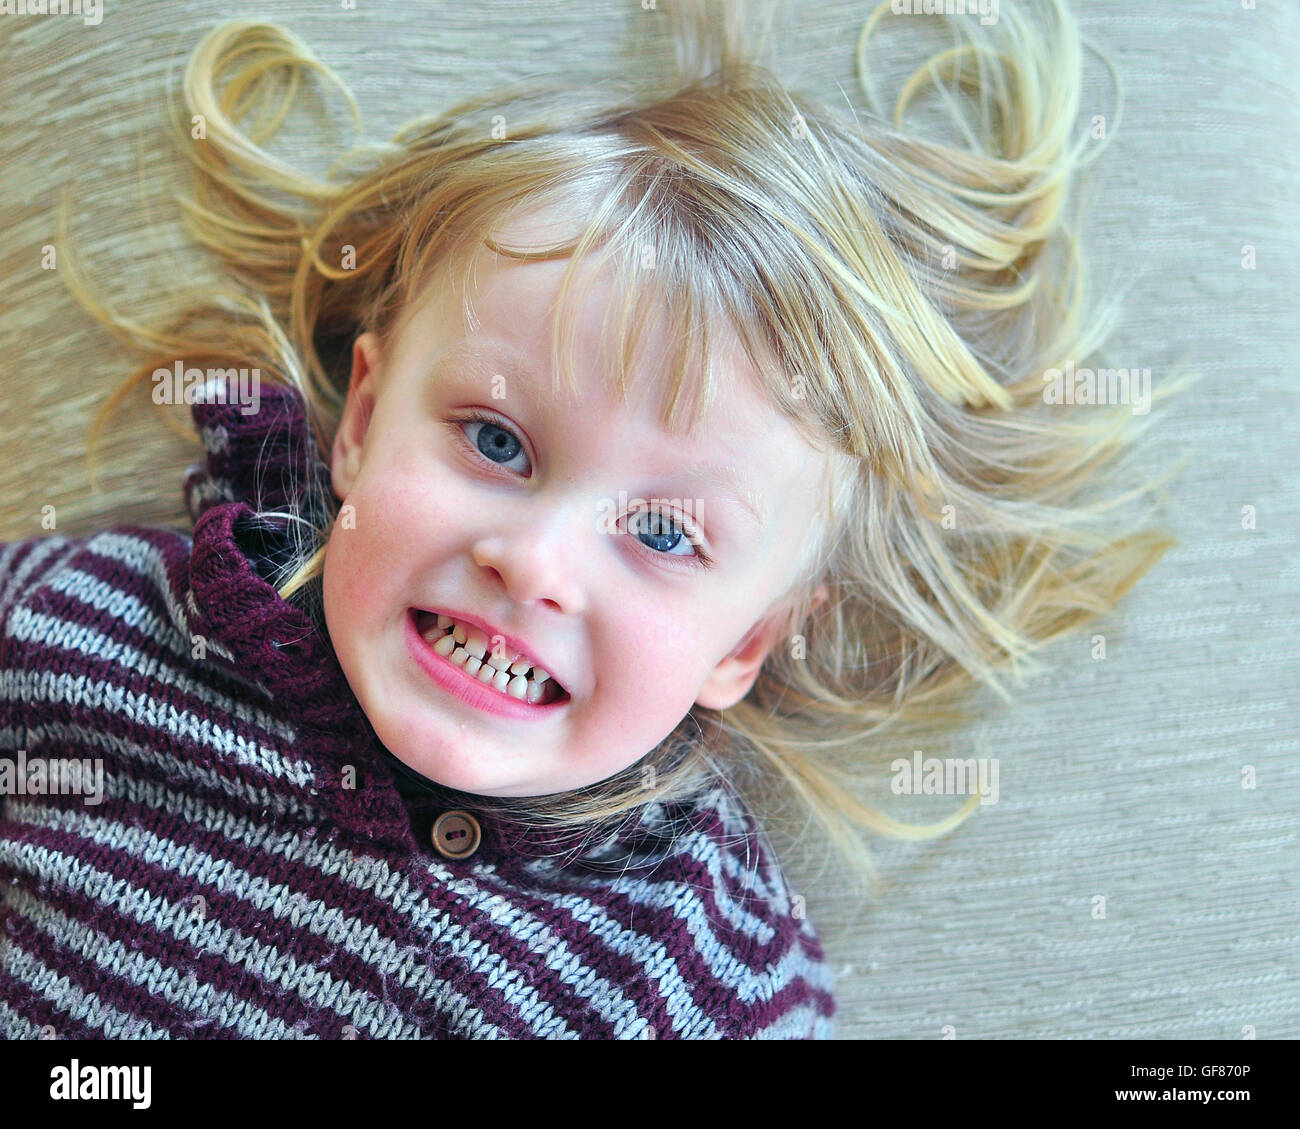 Süß lächelnden Baby mit einer langen blonden Haare auf dem Bett liegend Stockfoto